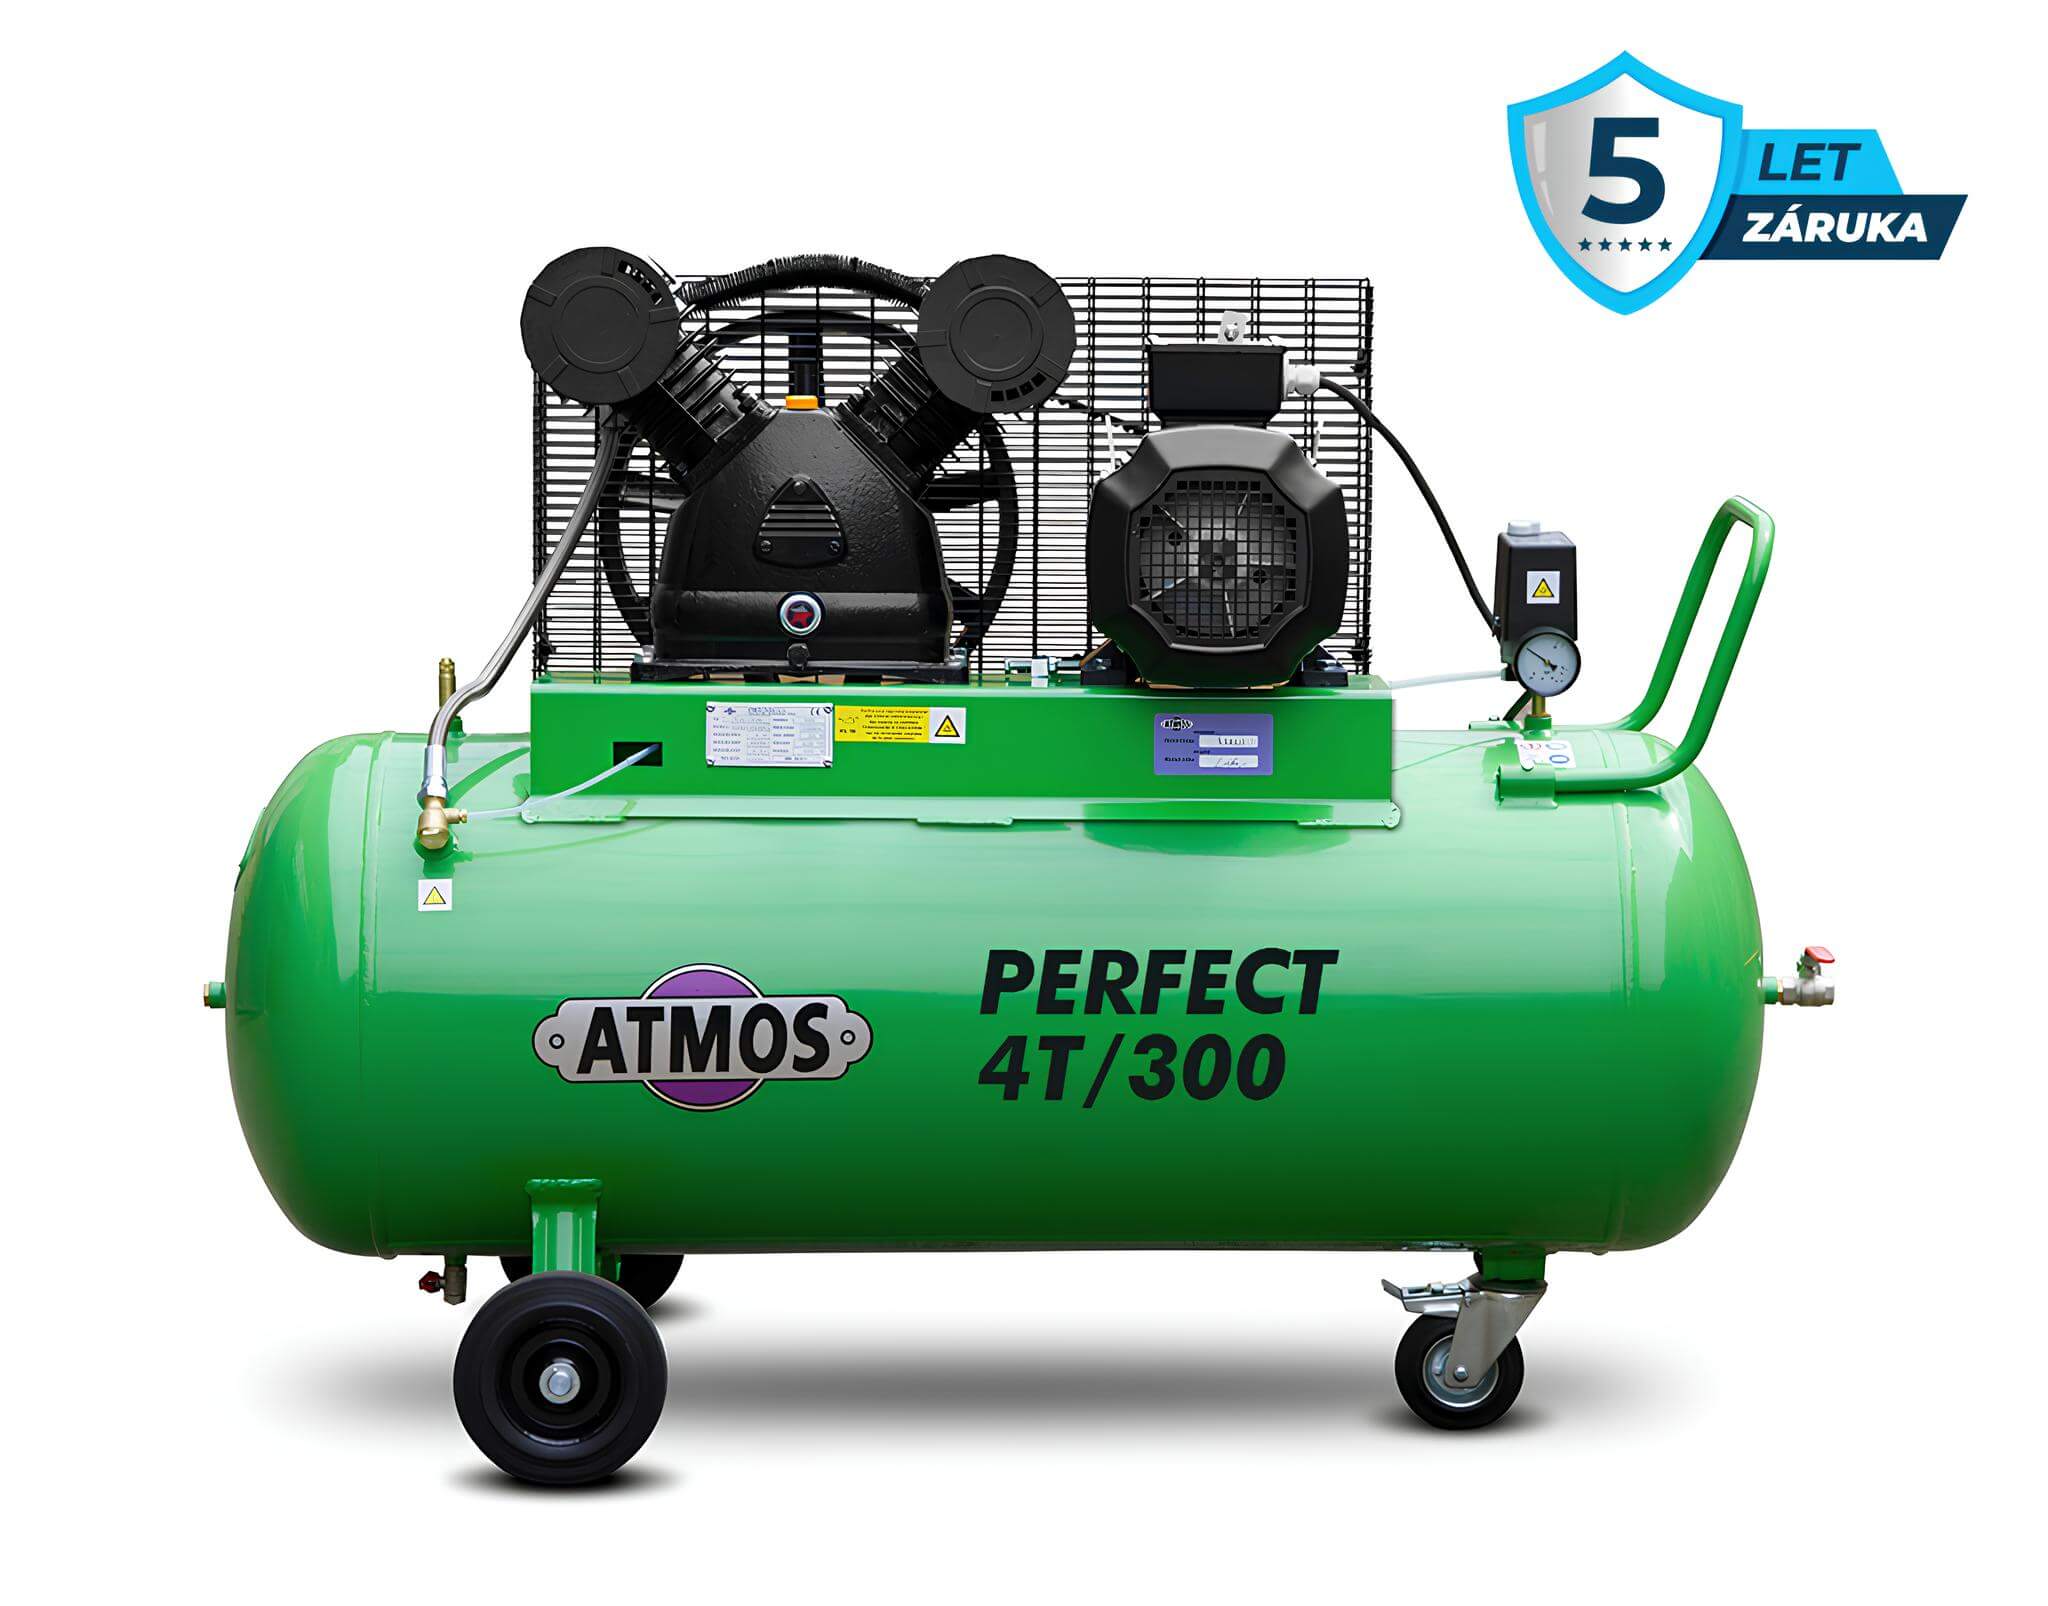 Atmos Pístový kompresor Perfect - 4T/300 příkon 4,0 kW, výkon 500 l/min, tlak 12,5 bar, vzdušník 300 l, napětí 400/50 V/Hz